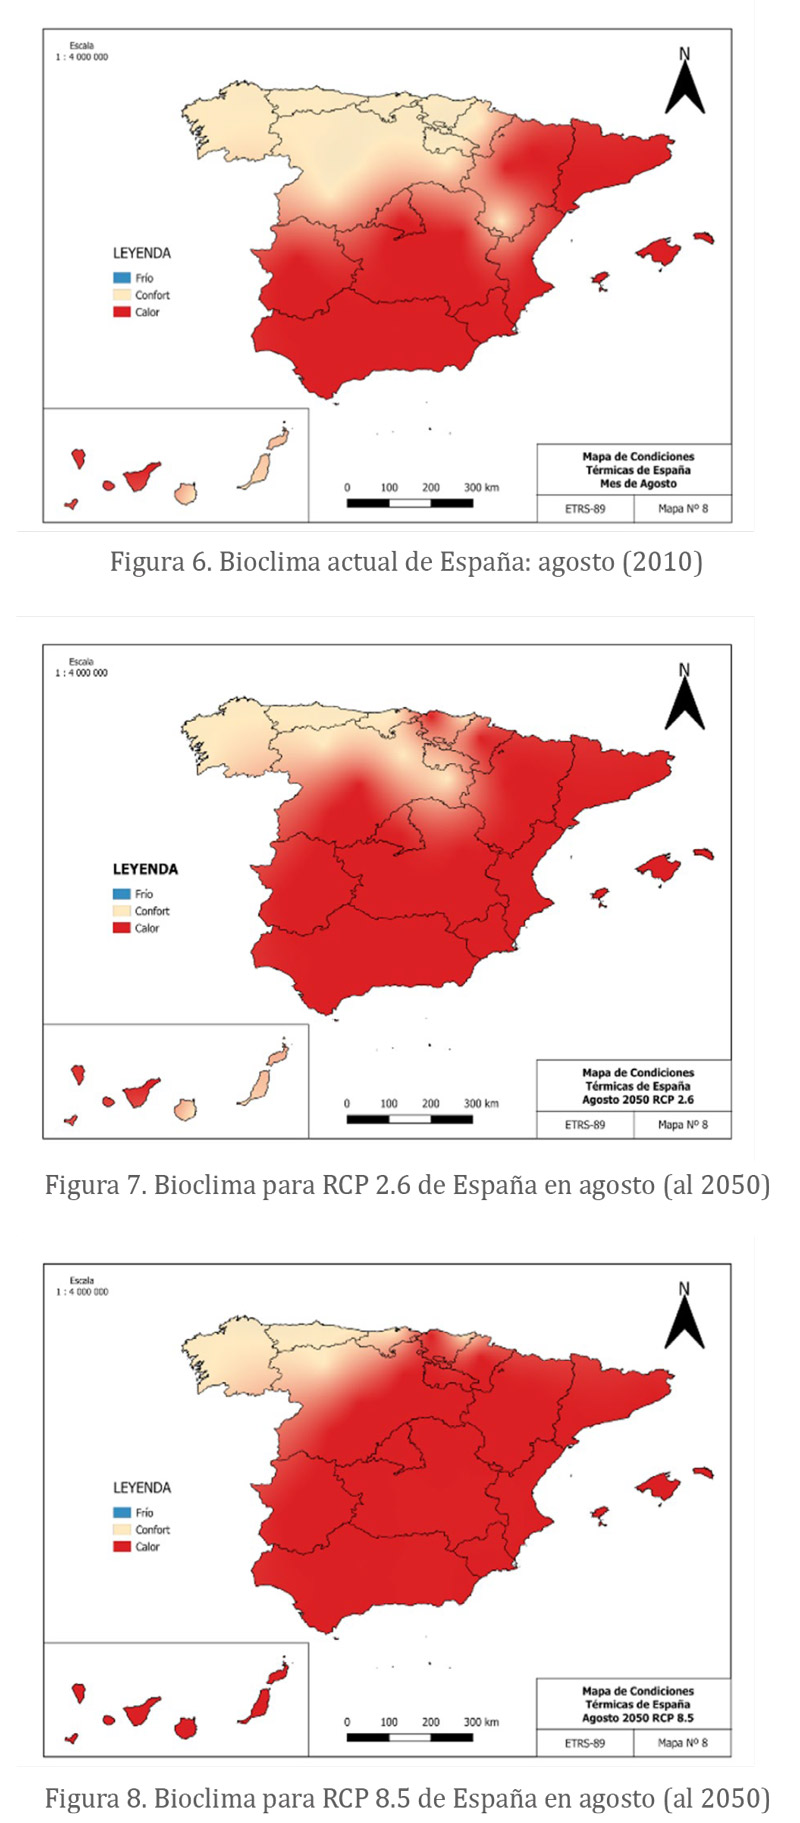 Bioclima para RCP 8.5 de España en agosto